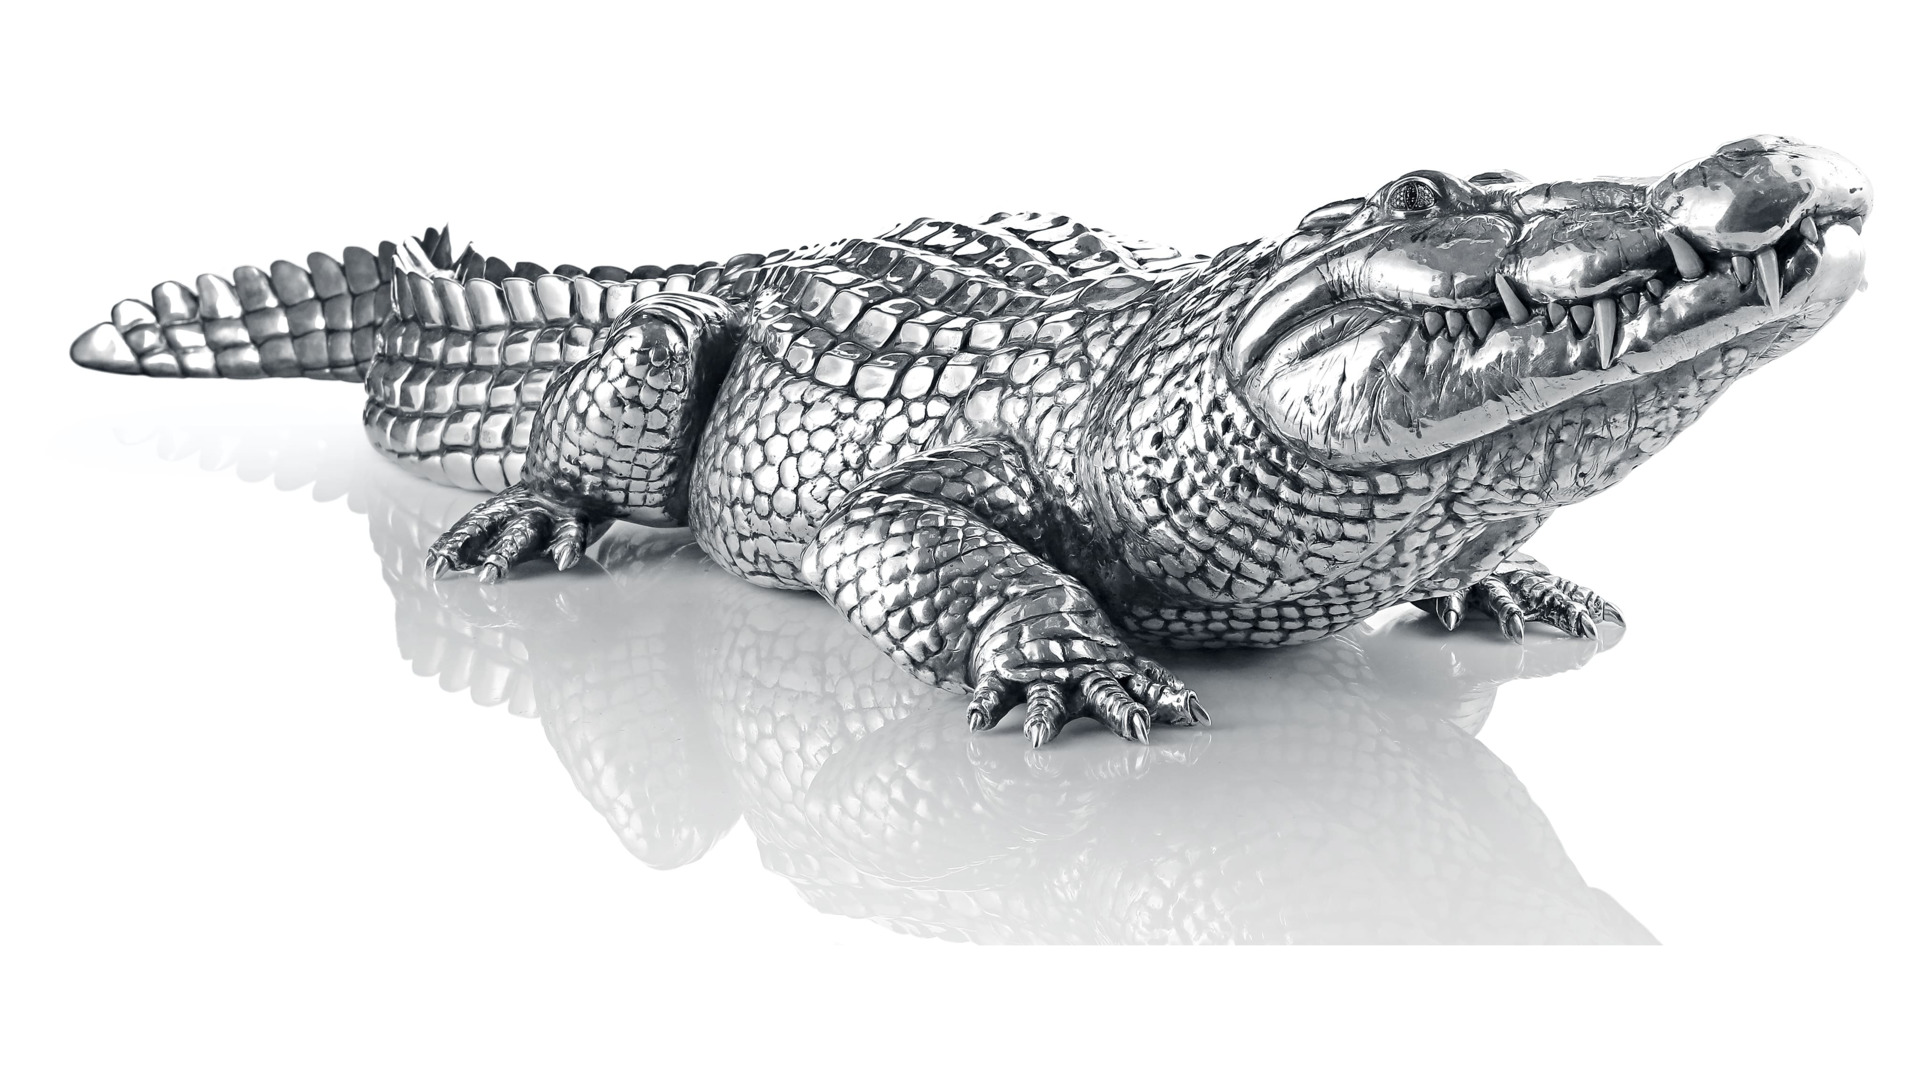 Статуэтка Cluev Decor Крокодил 84х30х13,5 см 7276,8 г, серебро 925, 52 бриллианта, 26 агатов, п/к